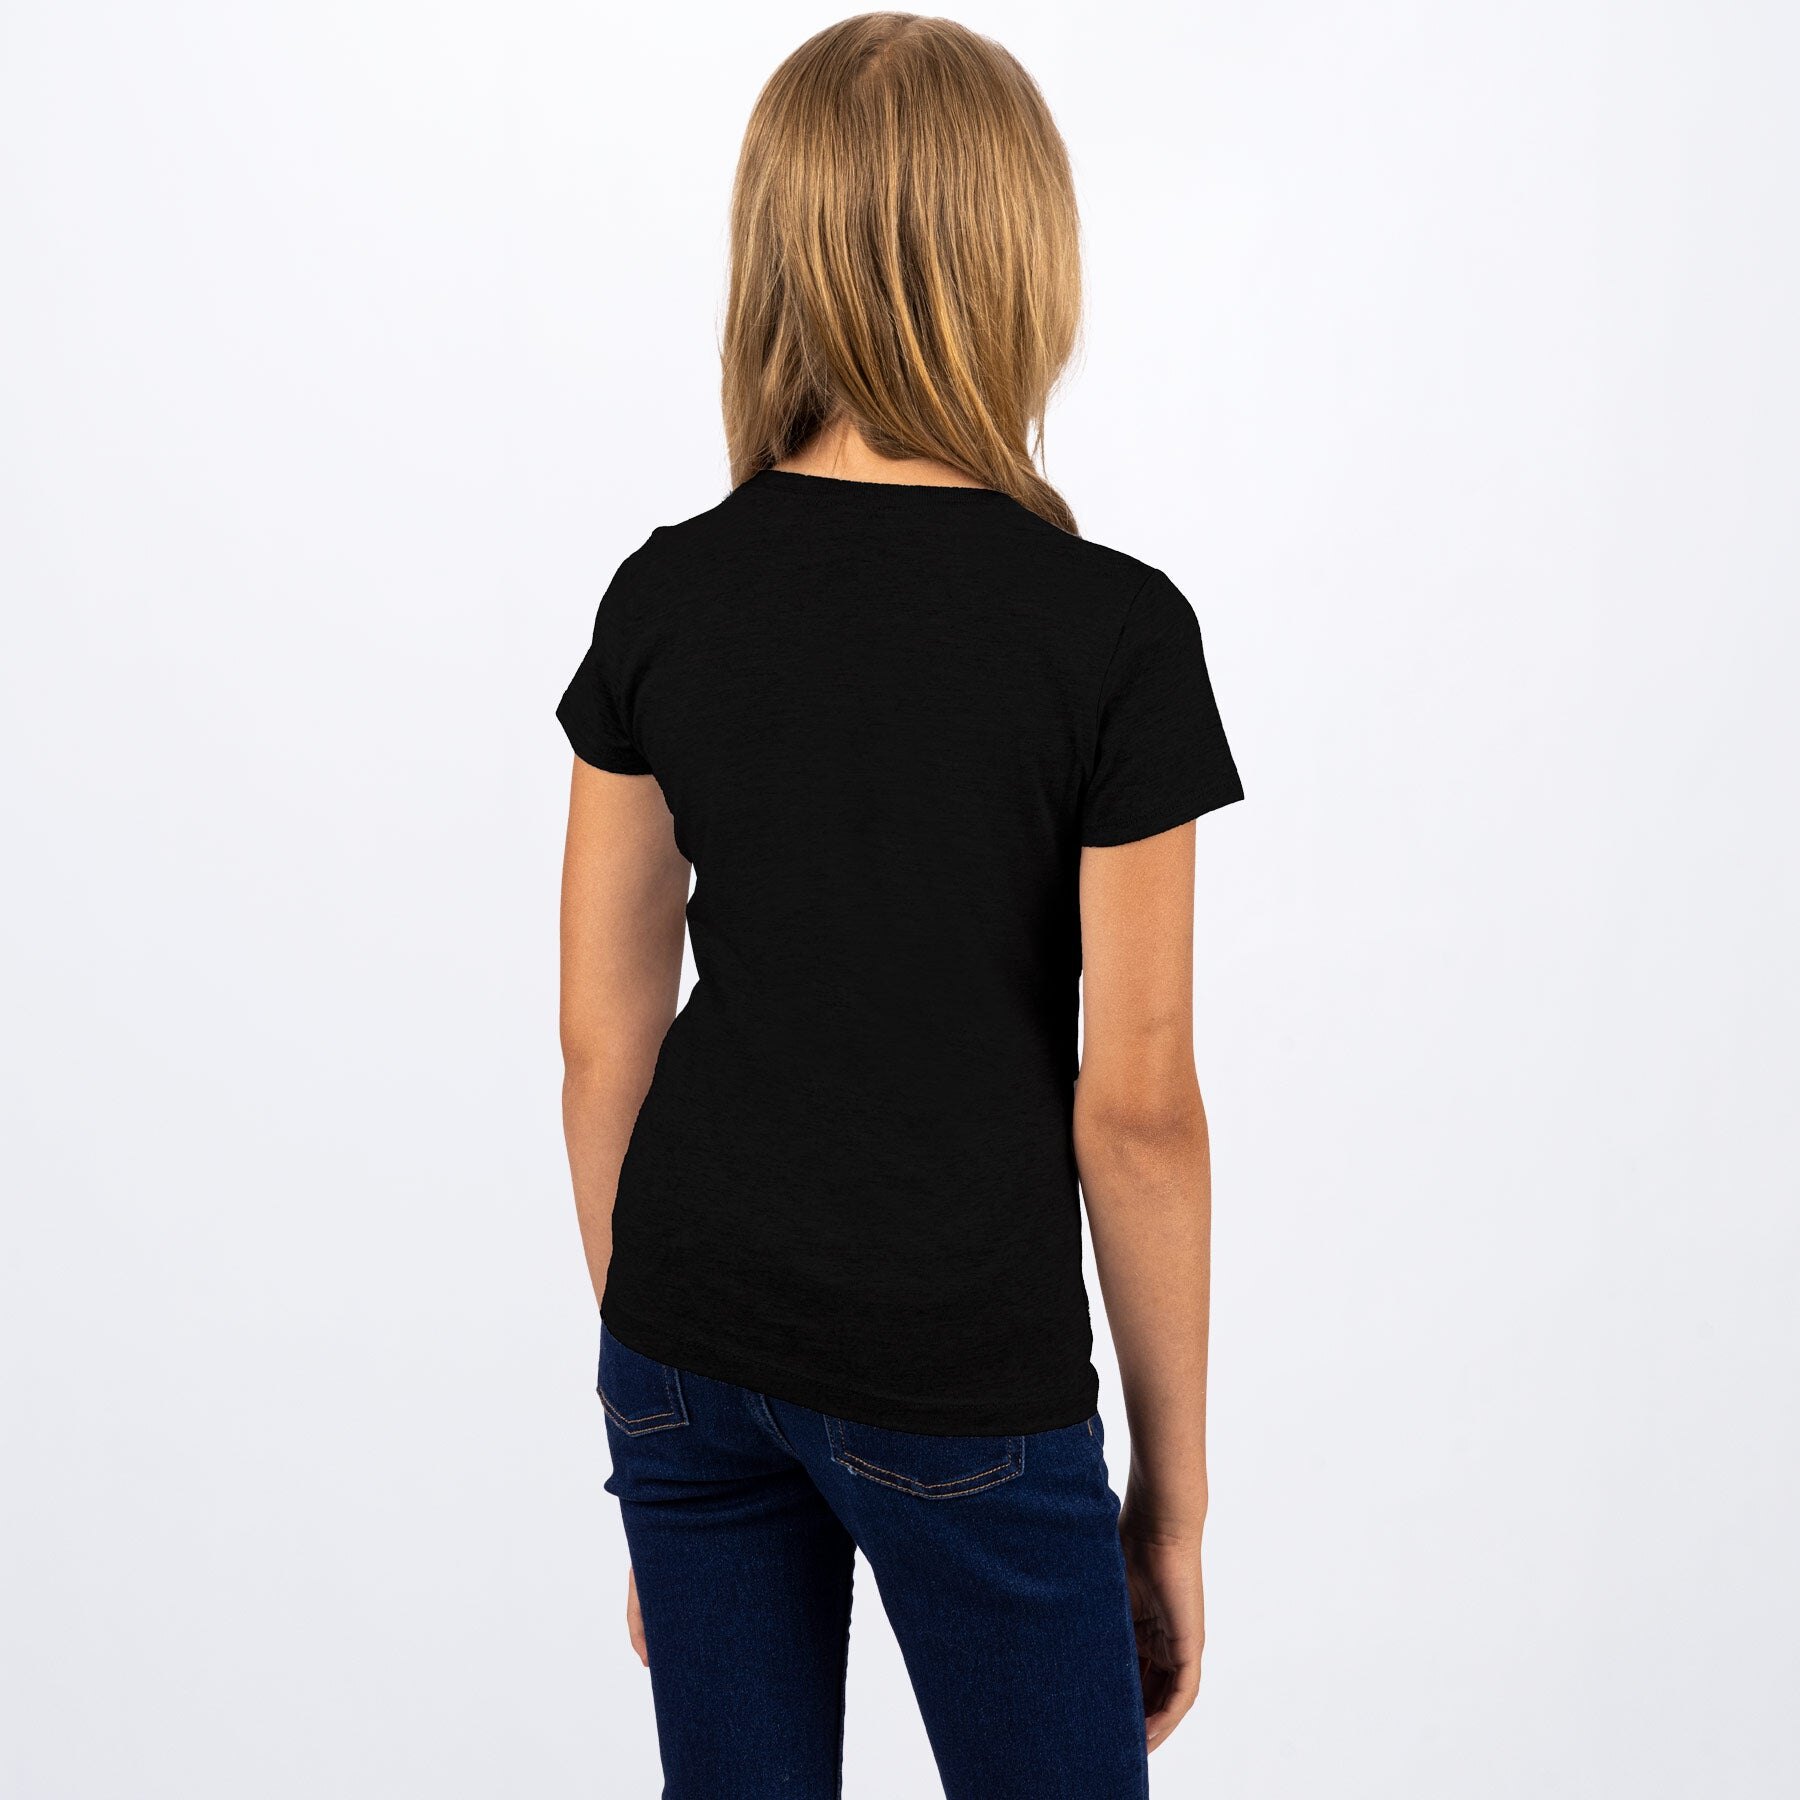 Youth Team Girls T Shirt L Black/Lilac